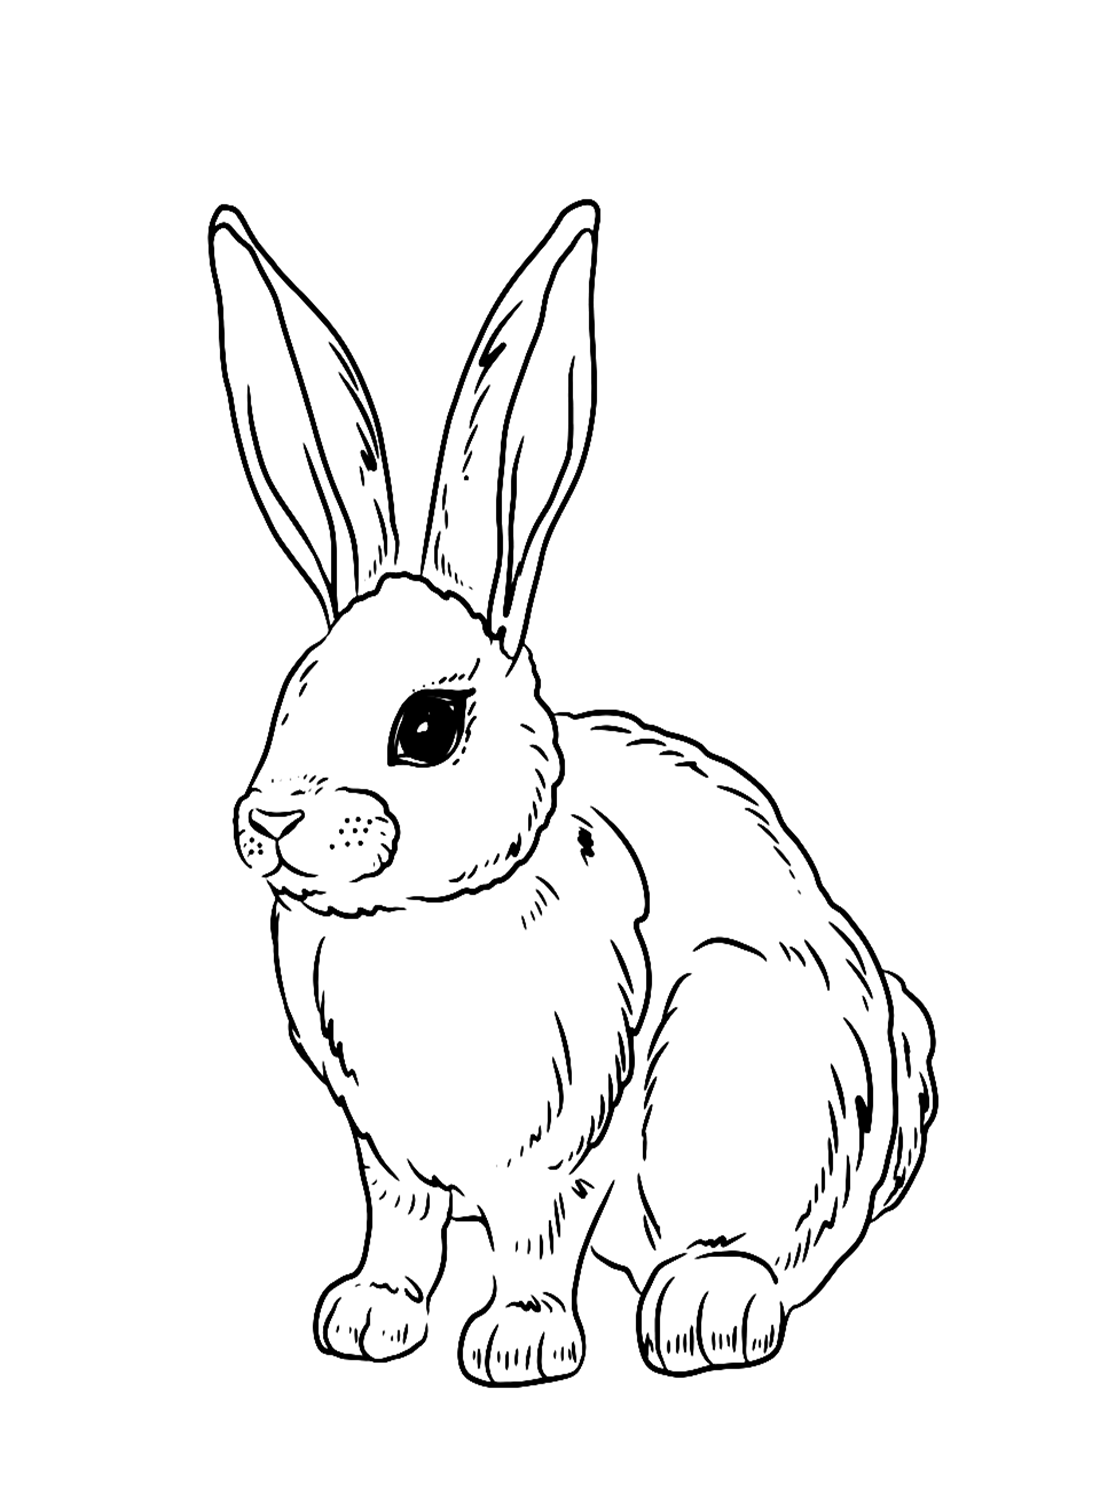 Realistisch konijn van konijn